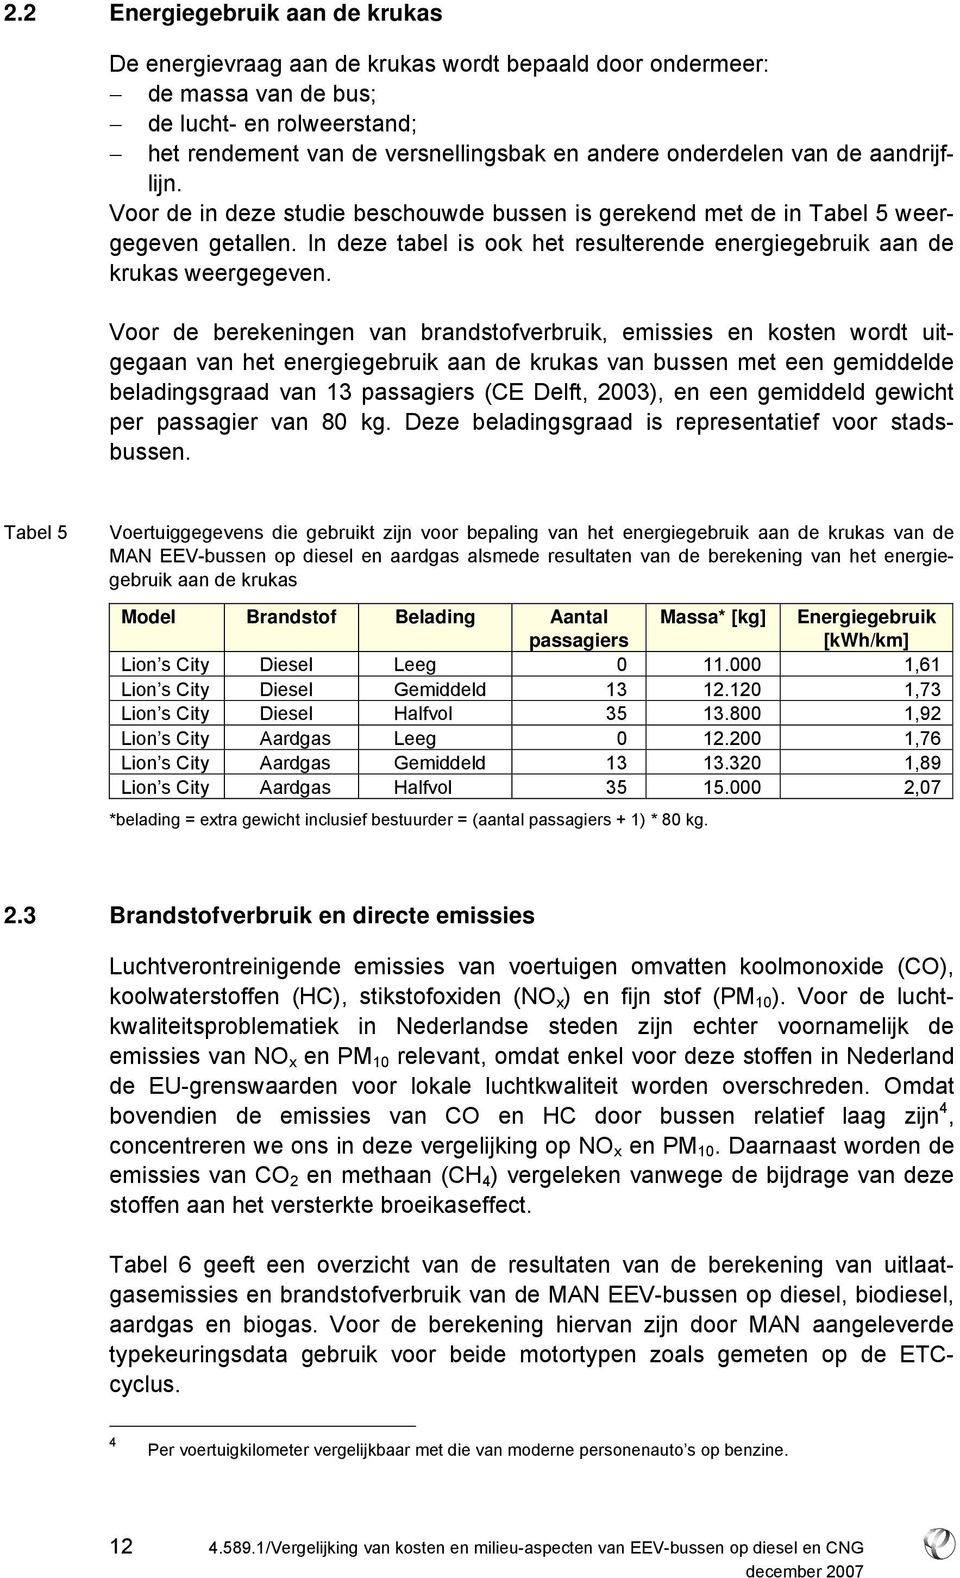 Voor de berekeningen van brandstofverbruik, emissies en kosten wordt uitgegaan van het energiegebruik aan de krukas van bussen met een gemiddelde beladingsgraad van 13 passagiers (CE Delft, 2003), en